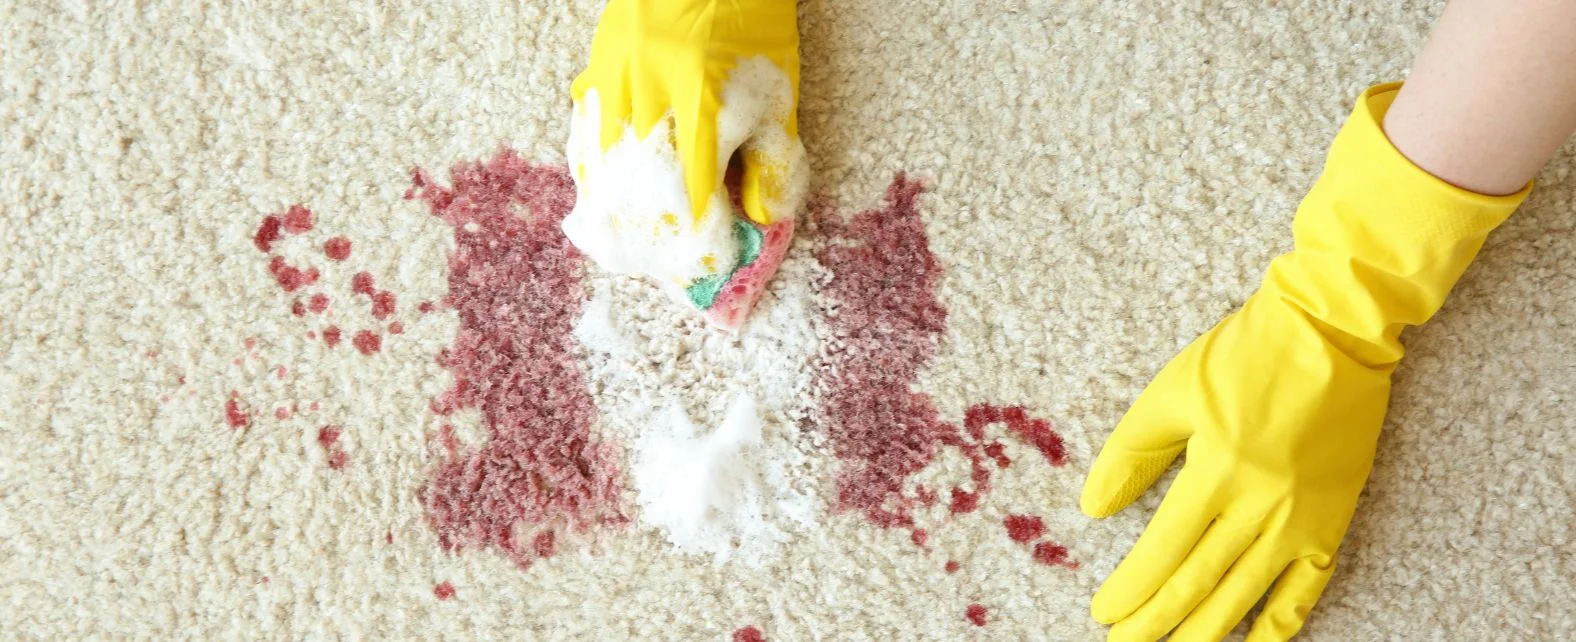 Nettoyage d’un tapis taché de sang avec du bicarbonate de soude